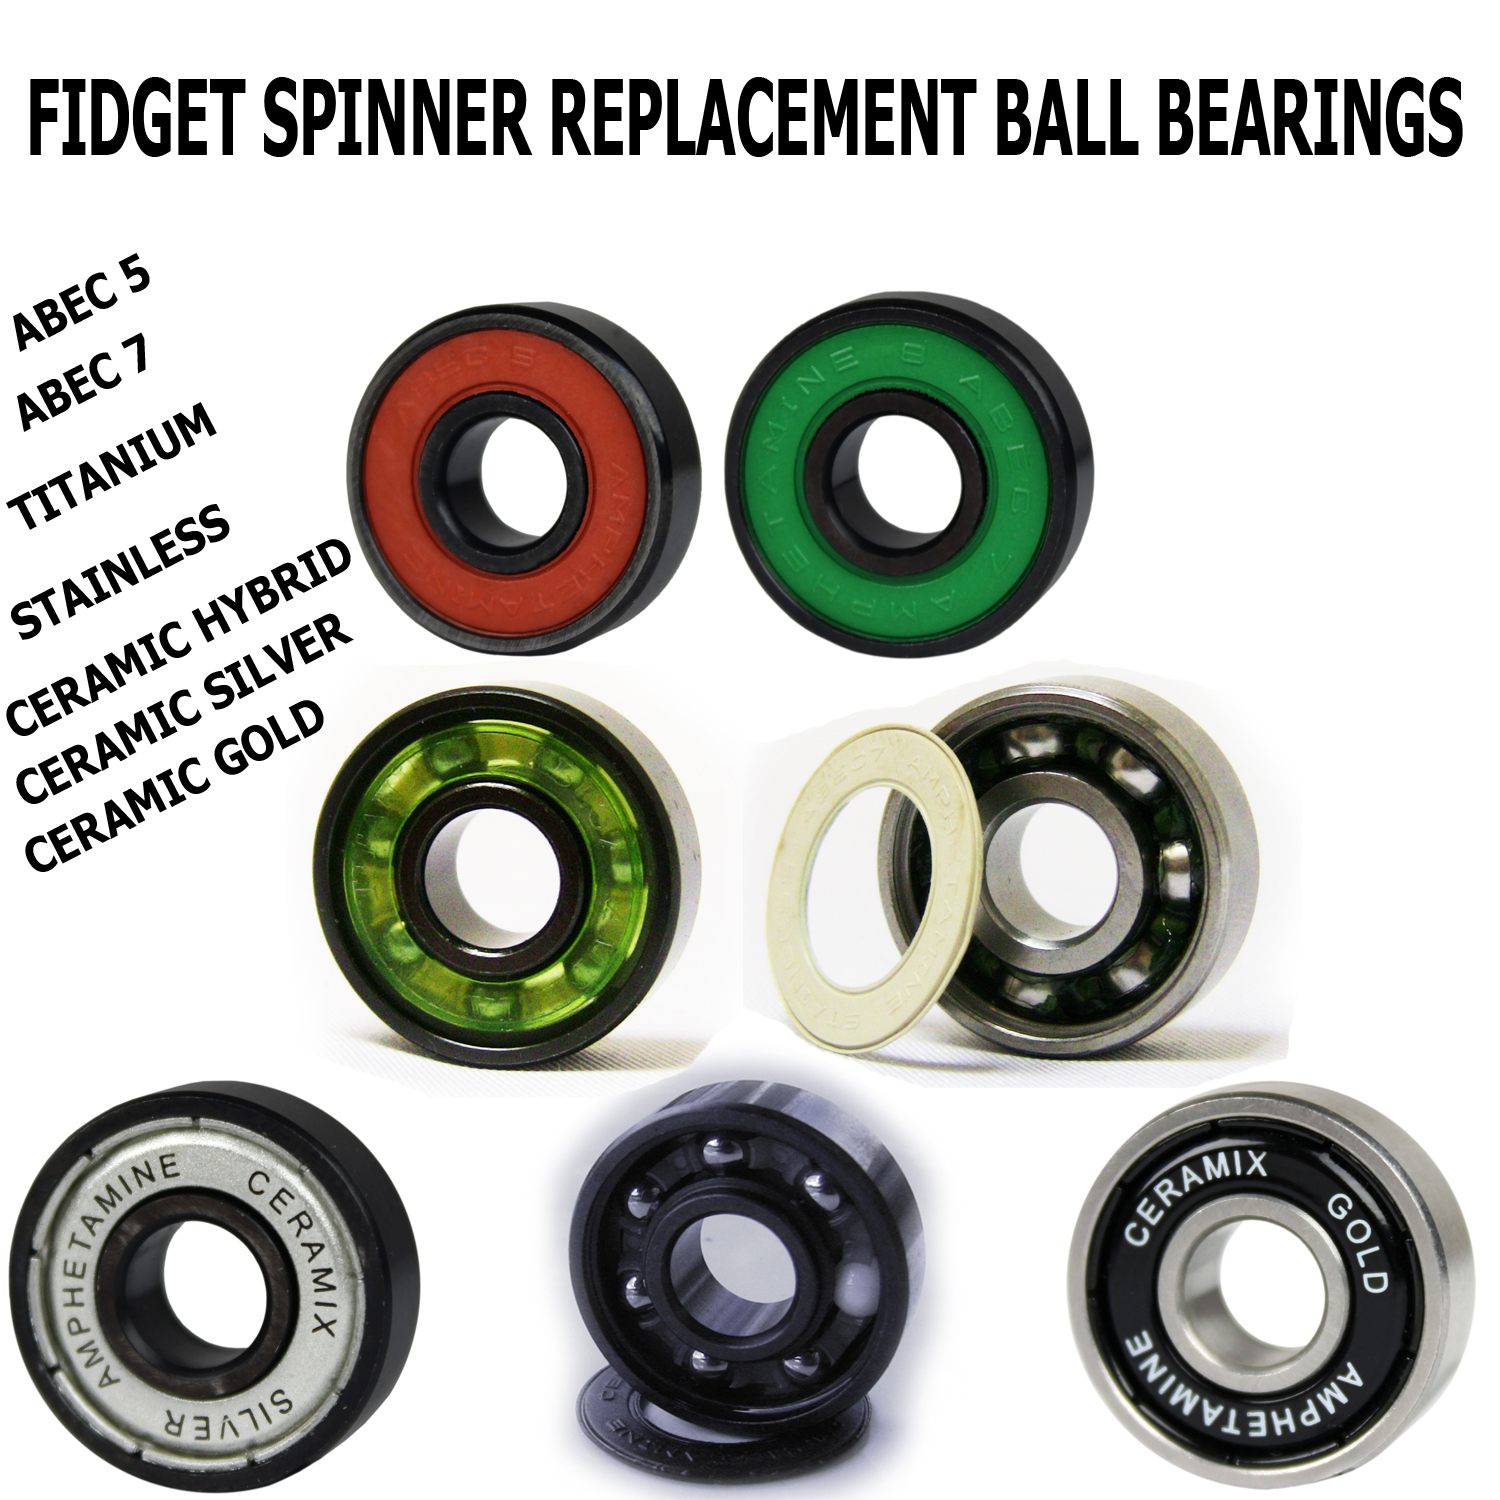 bearings for spinner toys